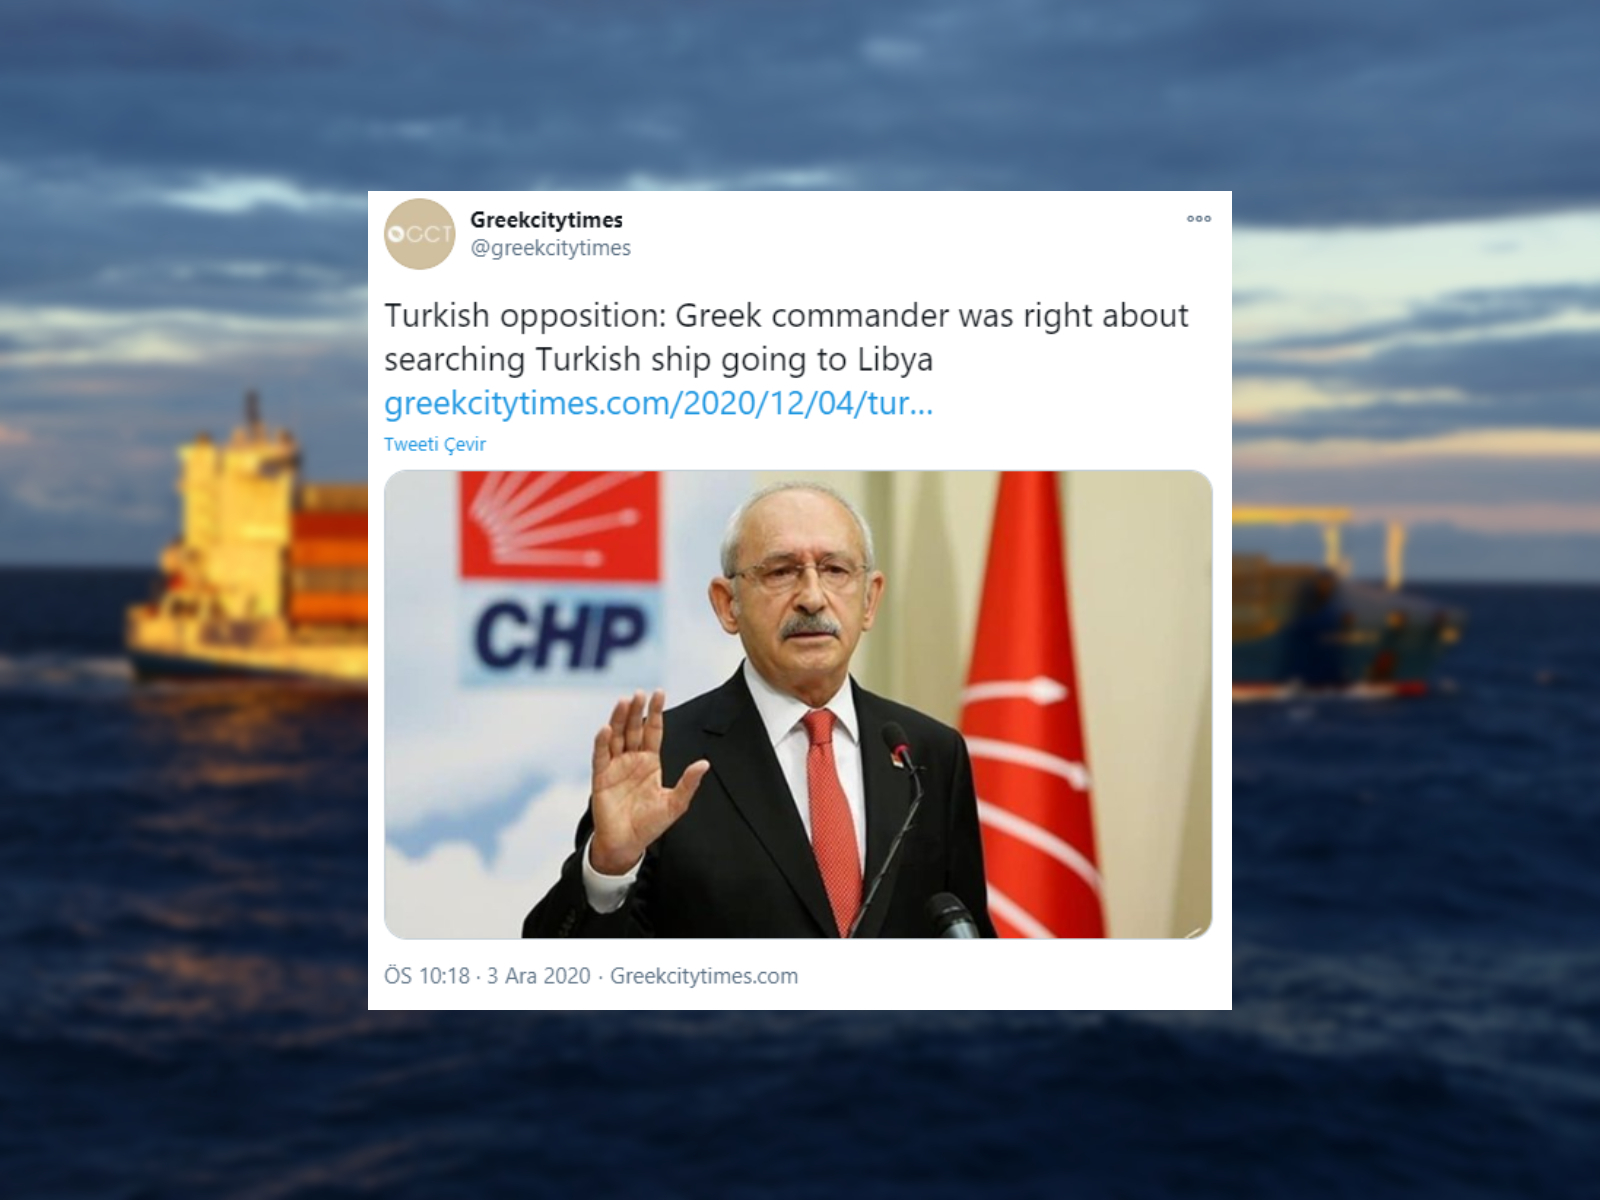 Yunanistan'dan Kılıçdaroğlu'na övgü: Muhalefet lideri "Libya'ya giden Türk gemisinin aranması haklıydı" dedi